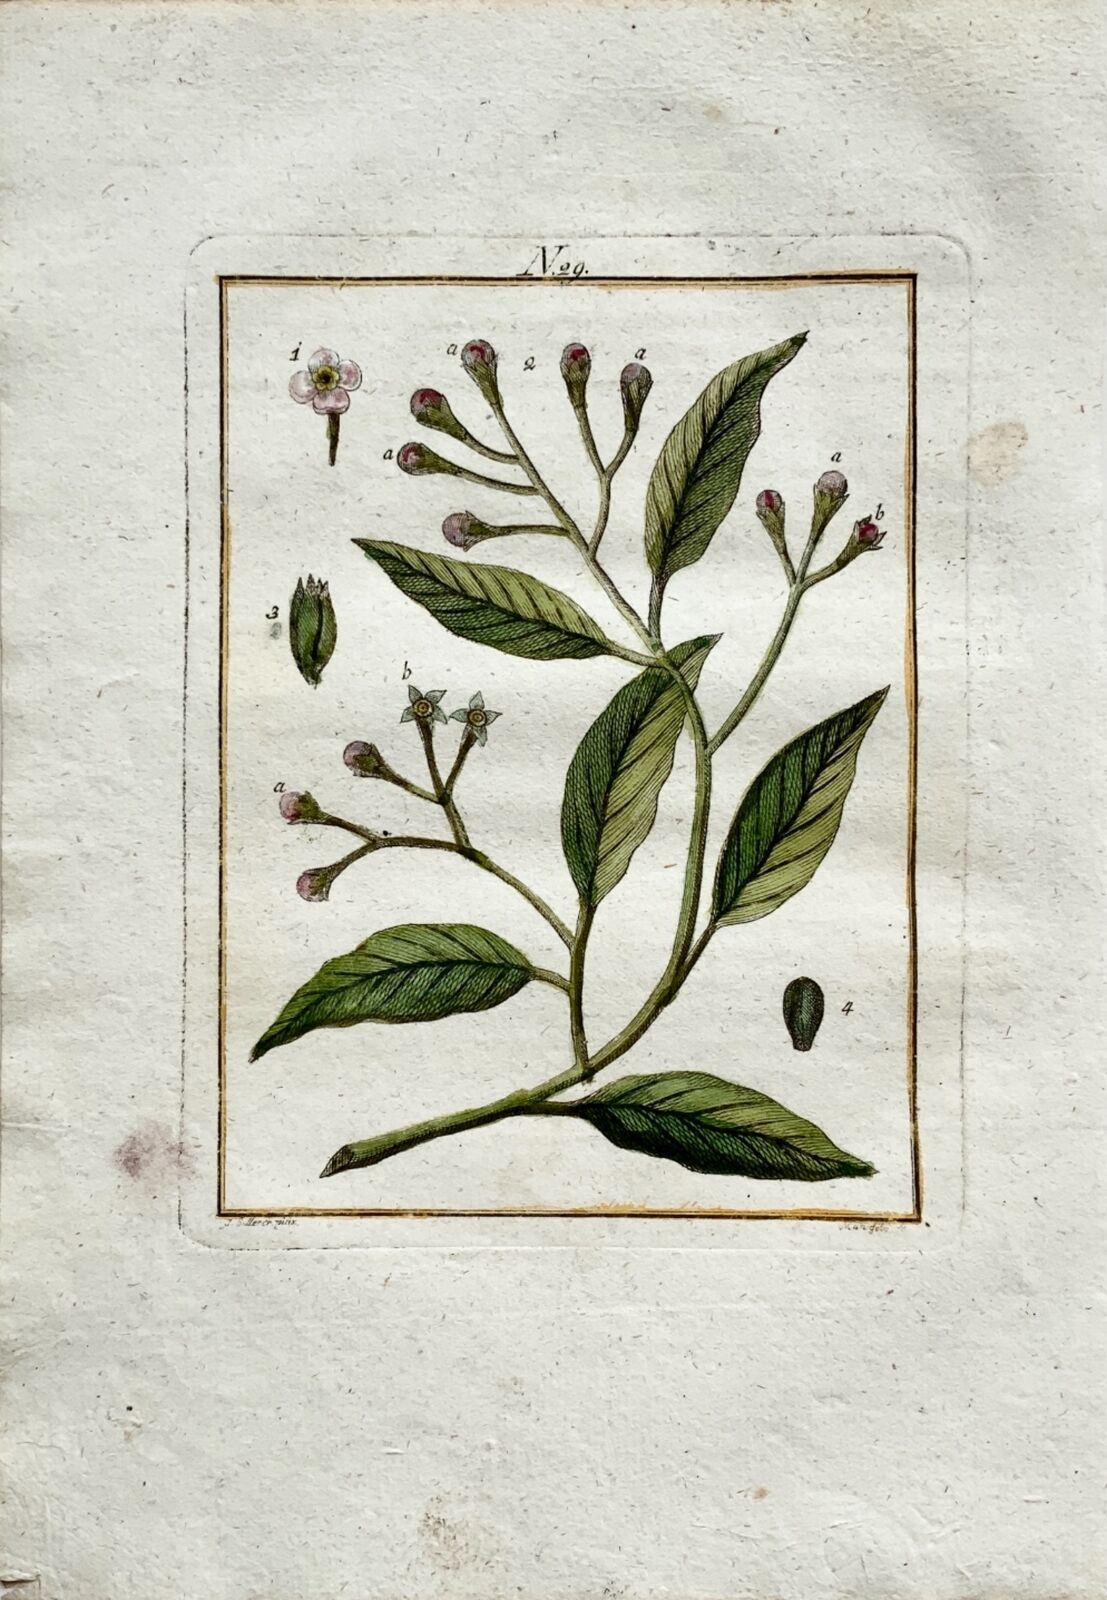 1790 Cloves, Myrtaceae tree, botany, Joh. Sollerer hand coloured engraving